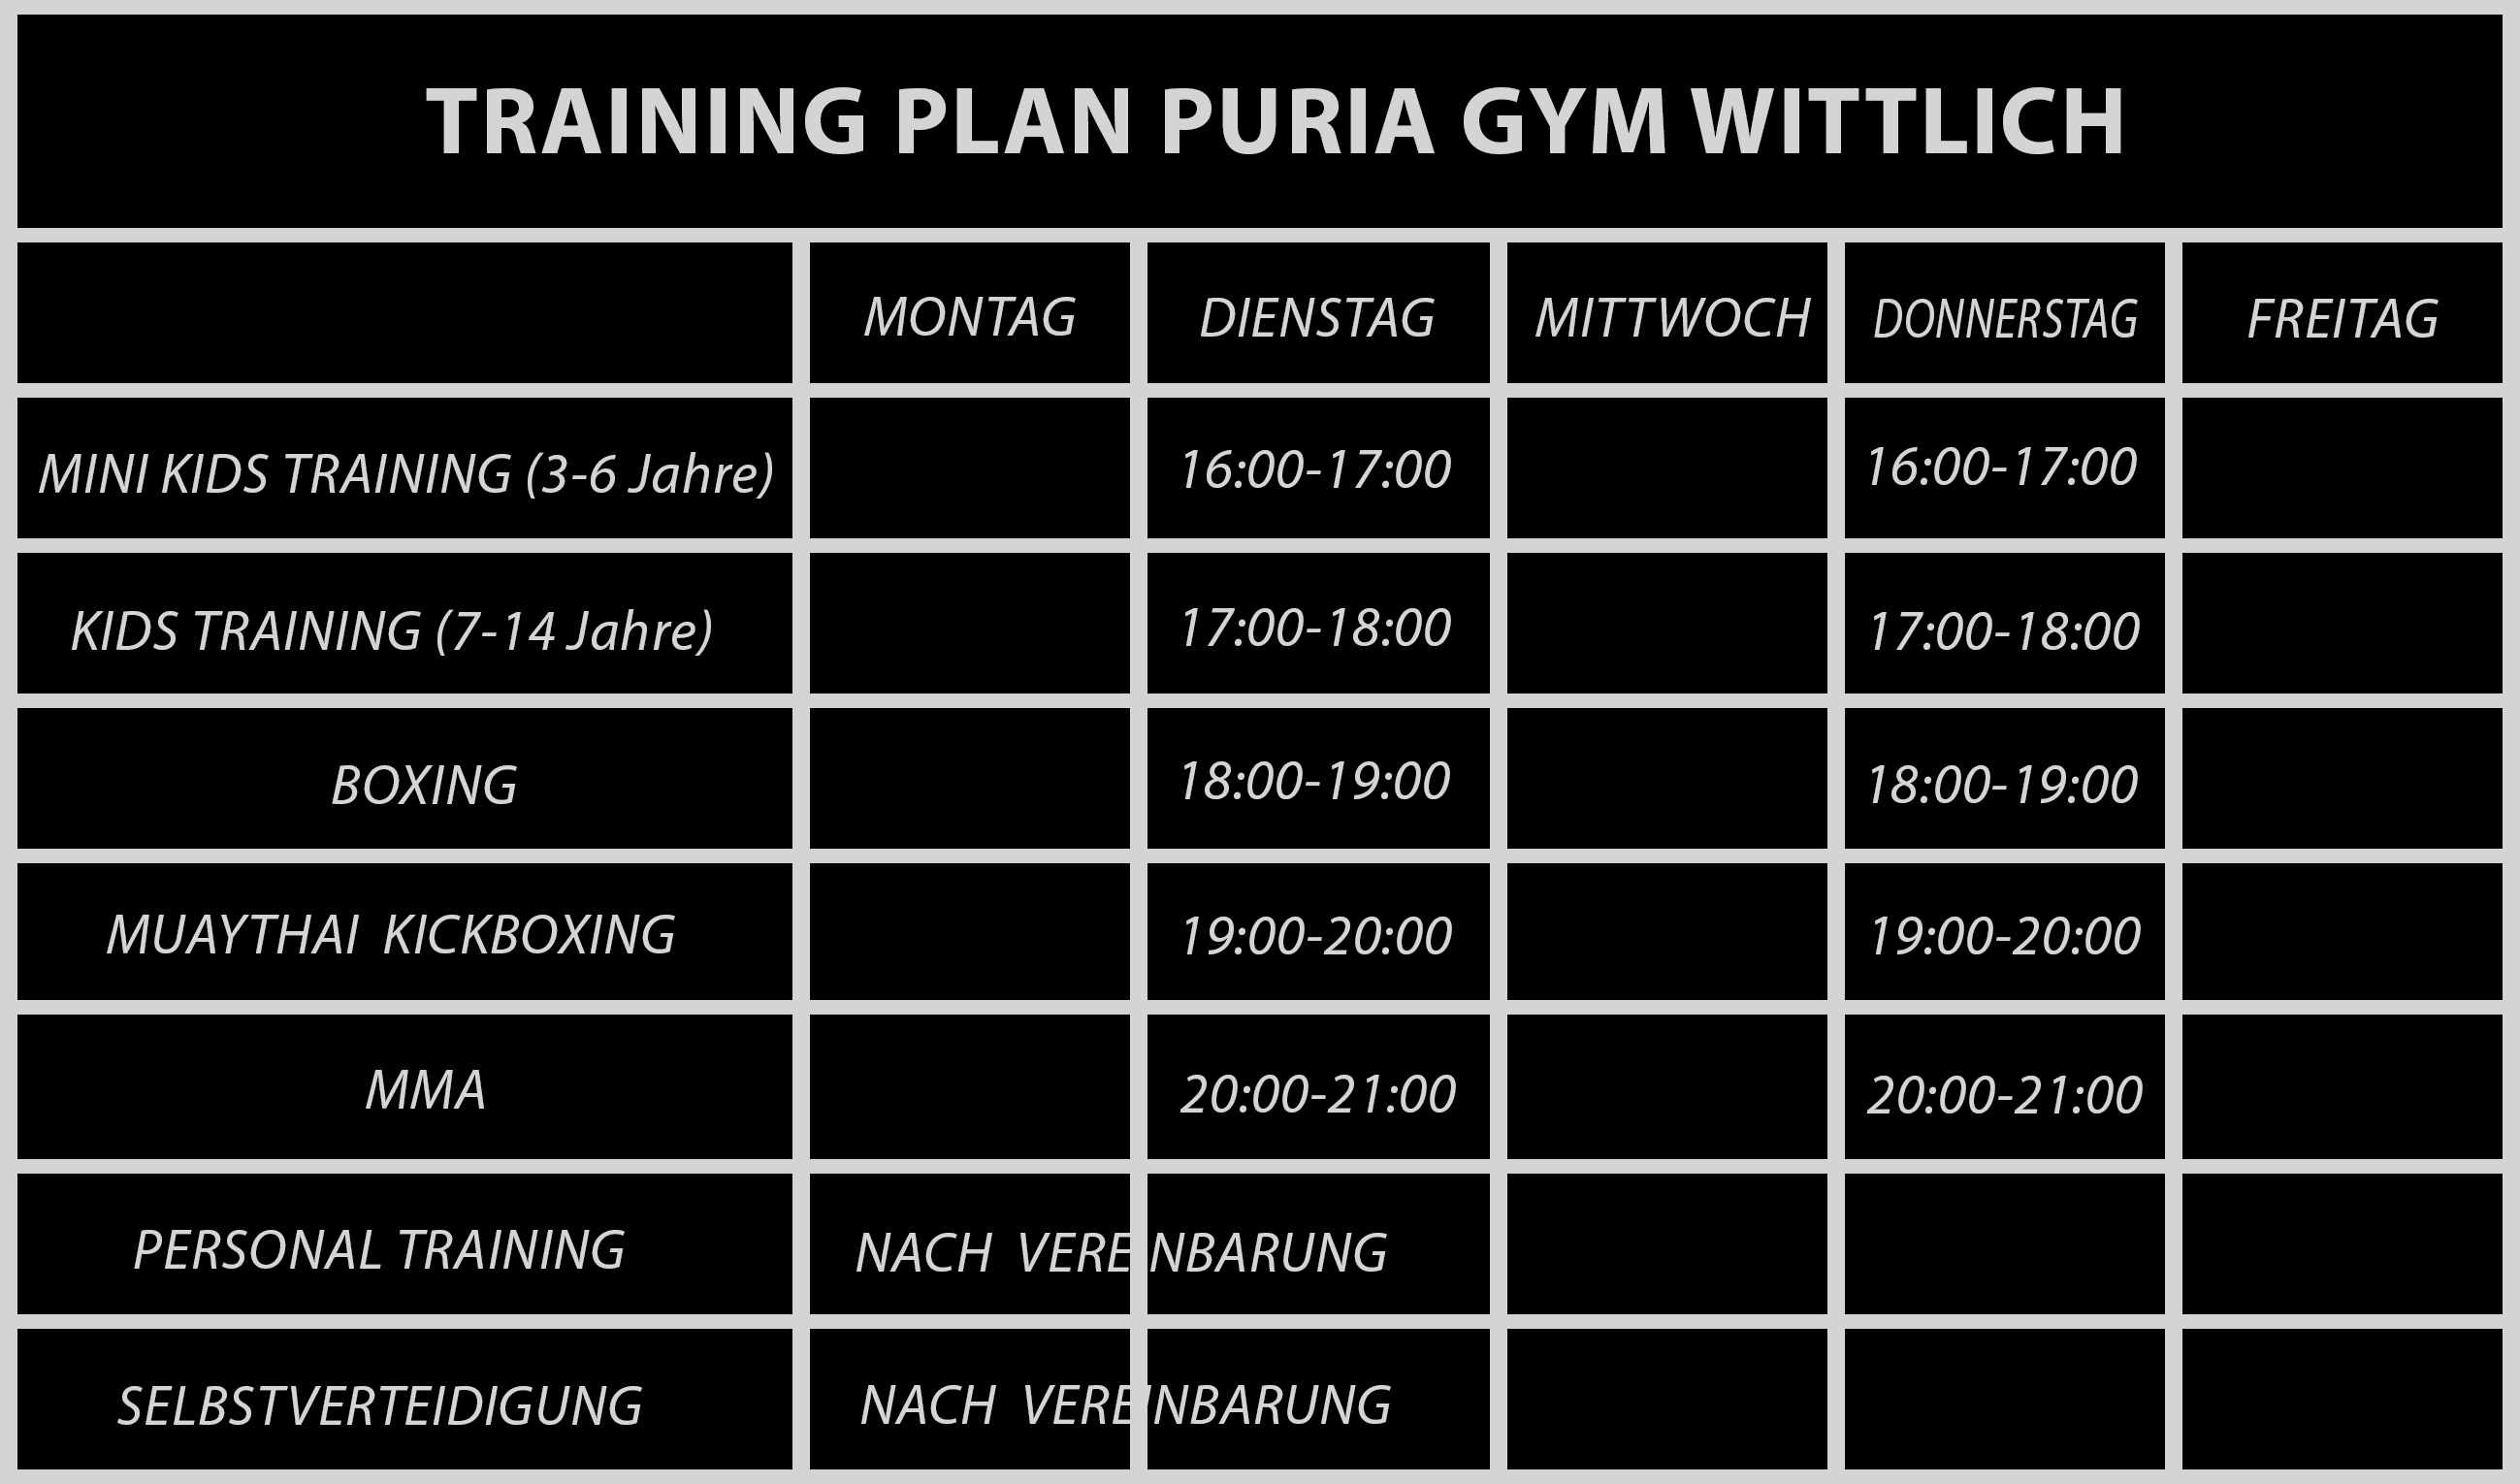 Training Plan Puria Gym Wittlich